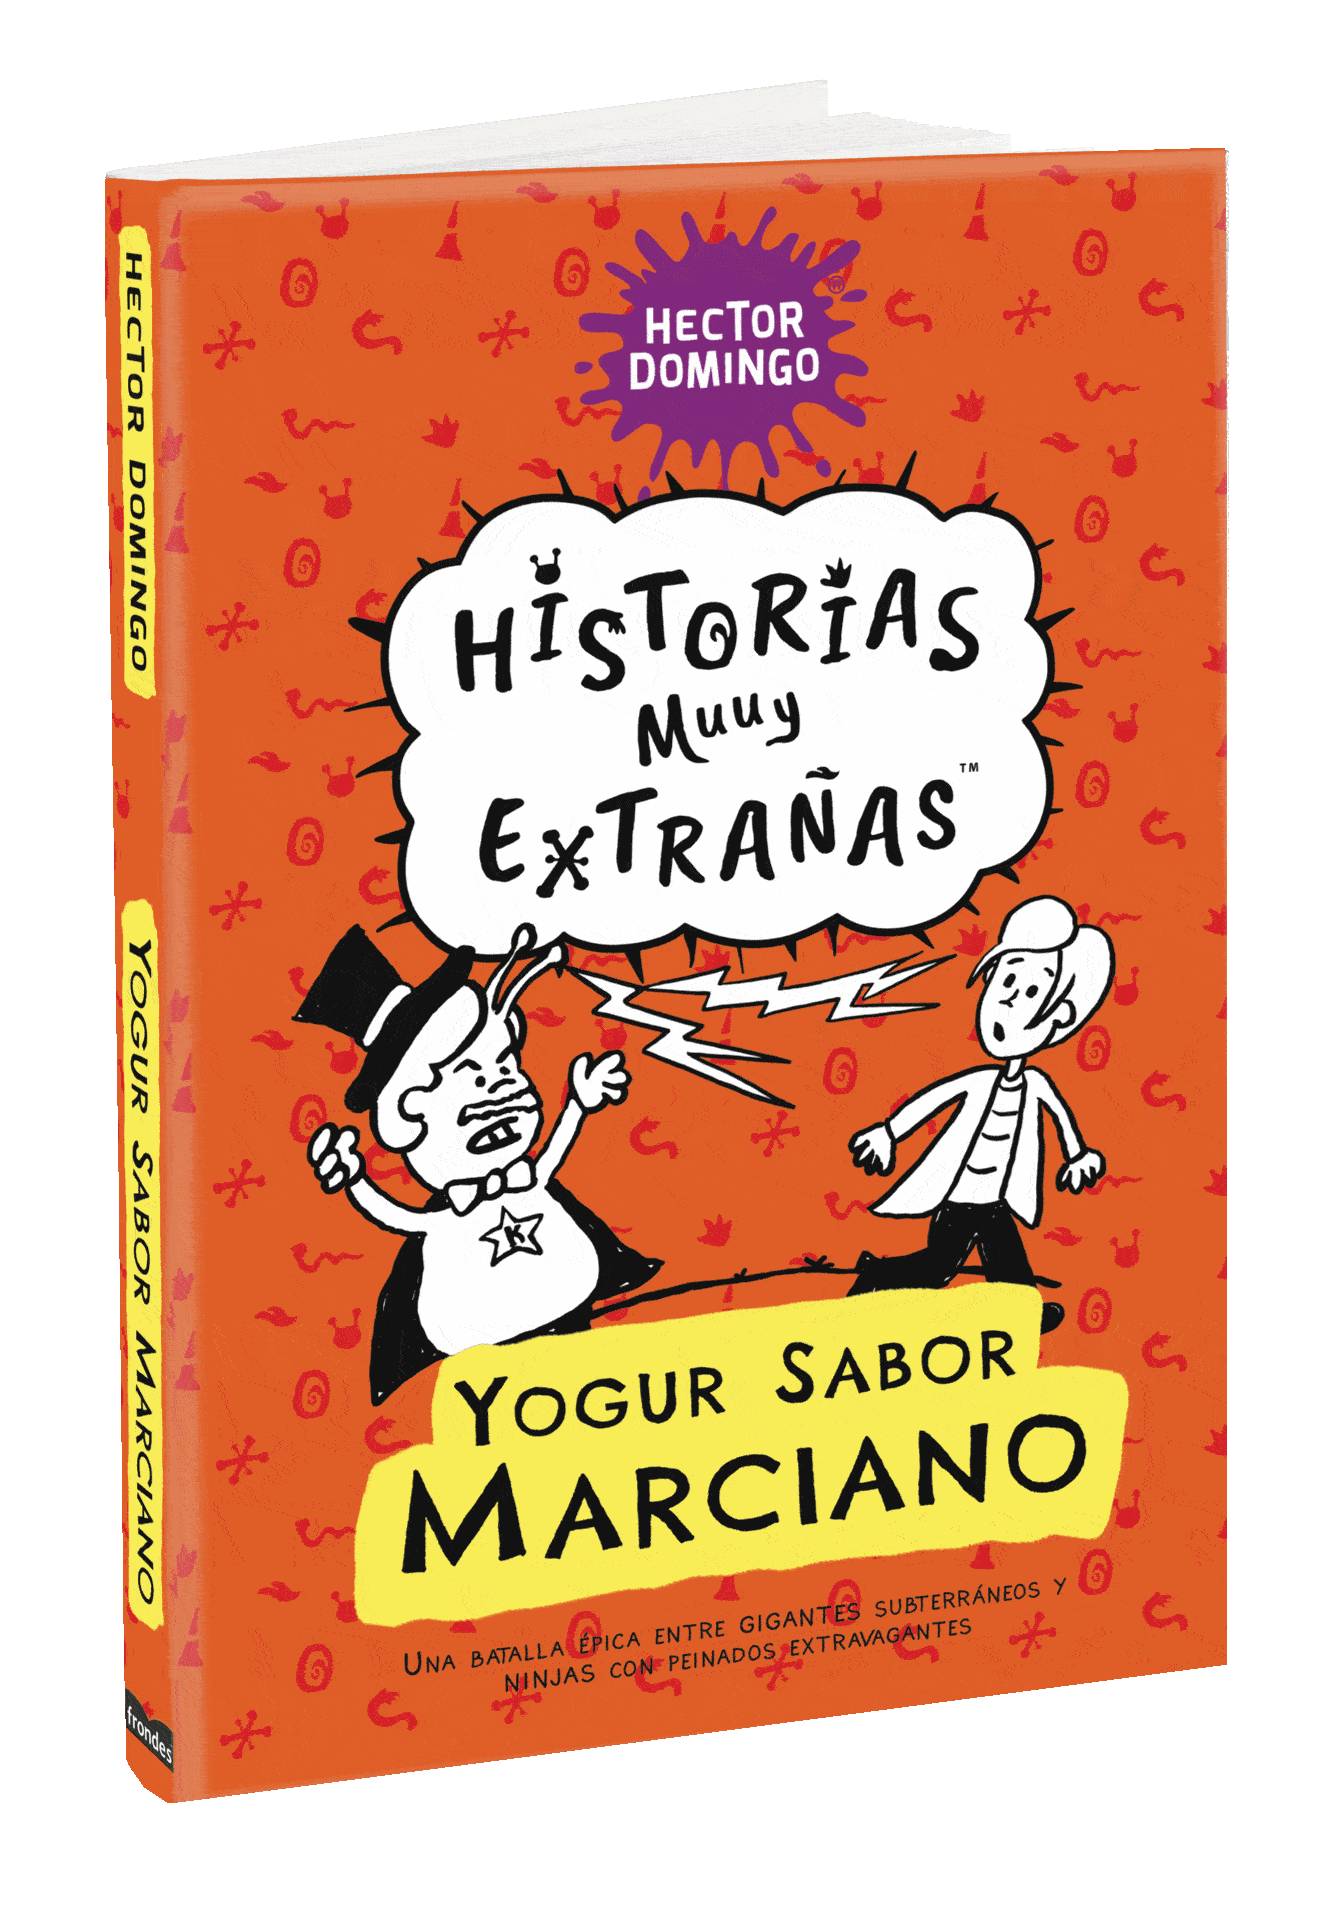 Yogur sabor marciano. Historias muuy extrañas, por Héctor Domingo. Libros. Novelas.